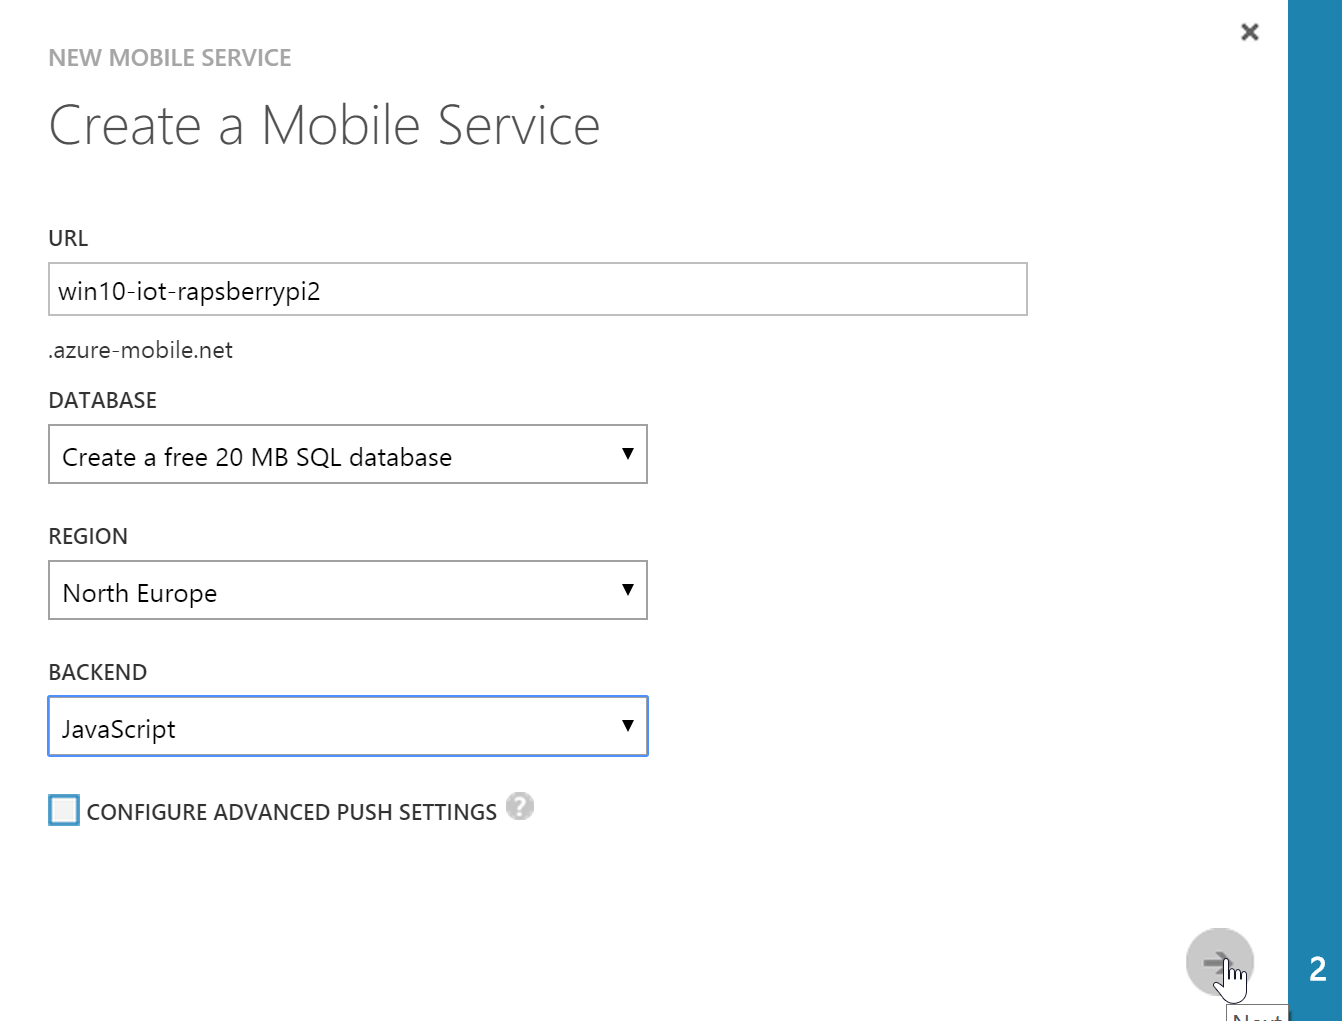 Création d'un Mobile Service Azure